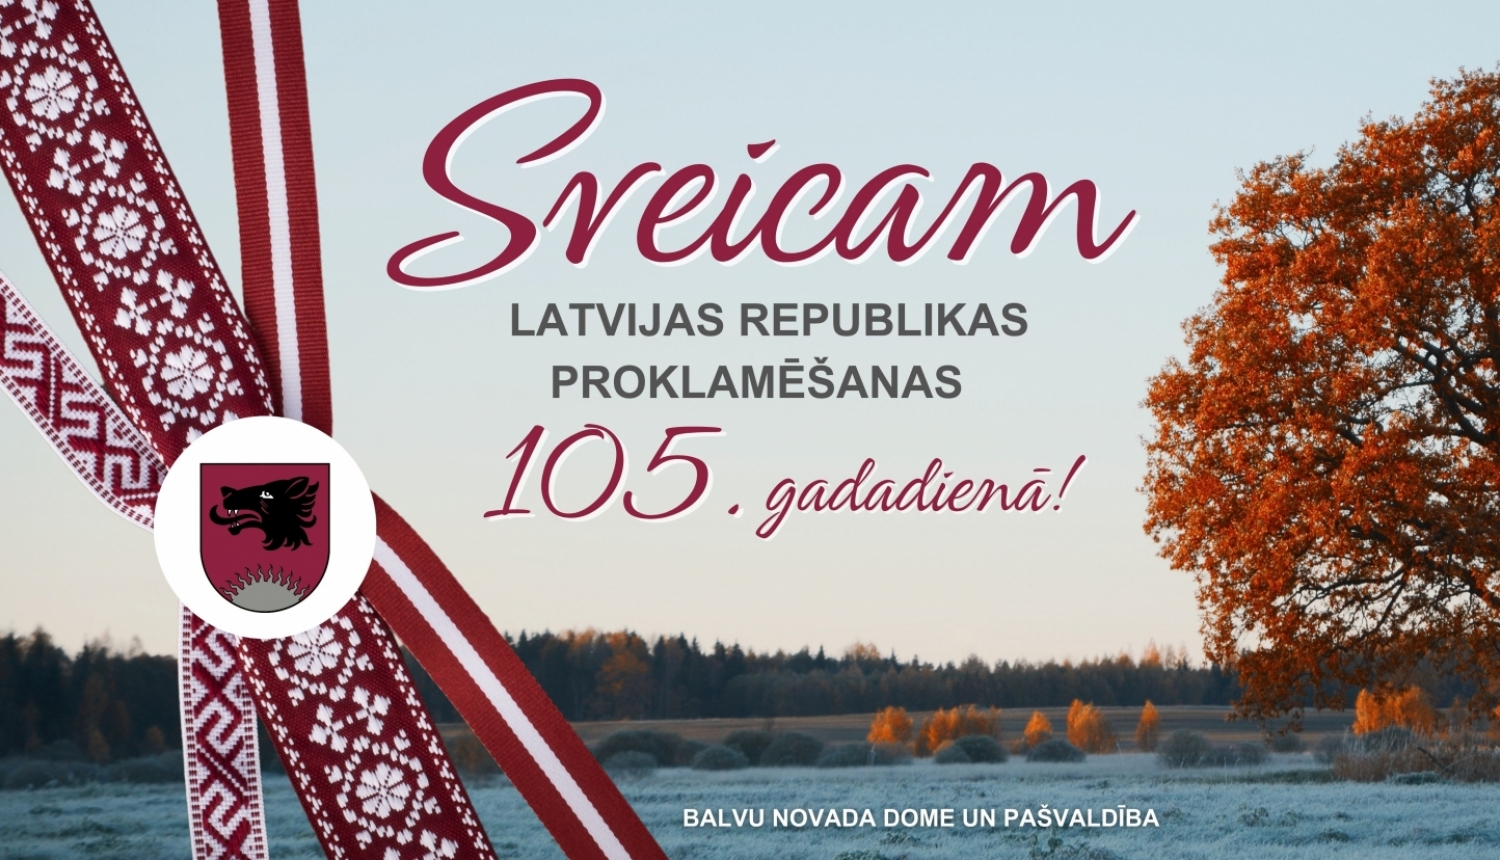 Balvu novada dome un pašvaldība sveic iedzīvotājus Latvijas Republikas proklamēšanas 105. gadadienā!